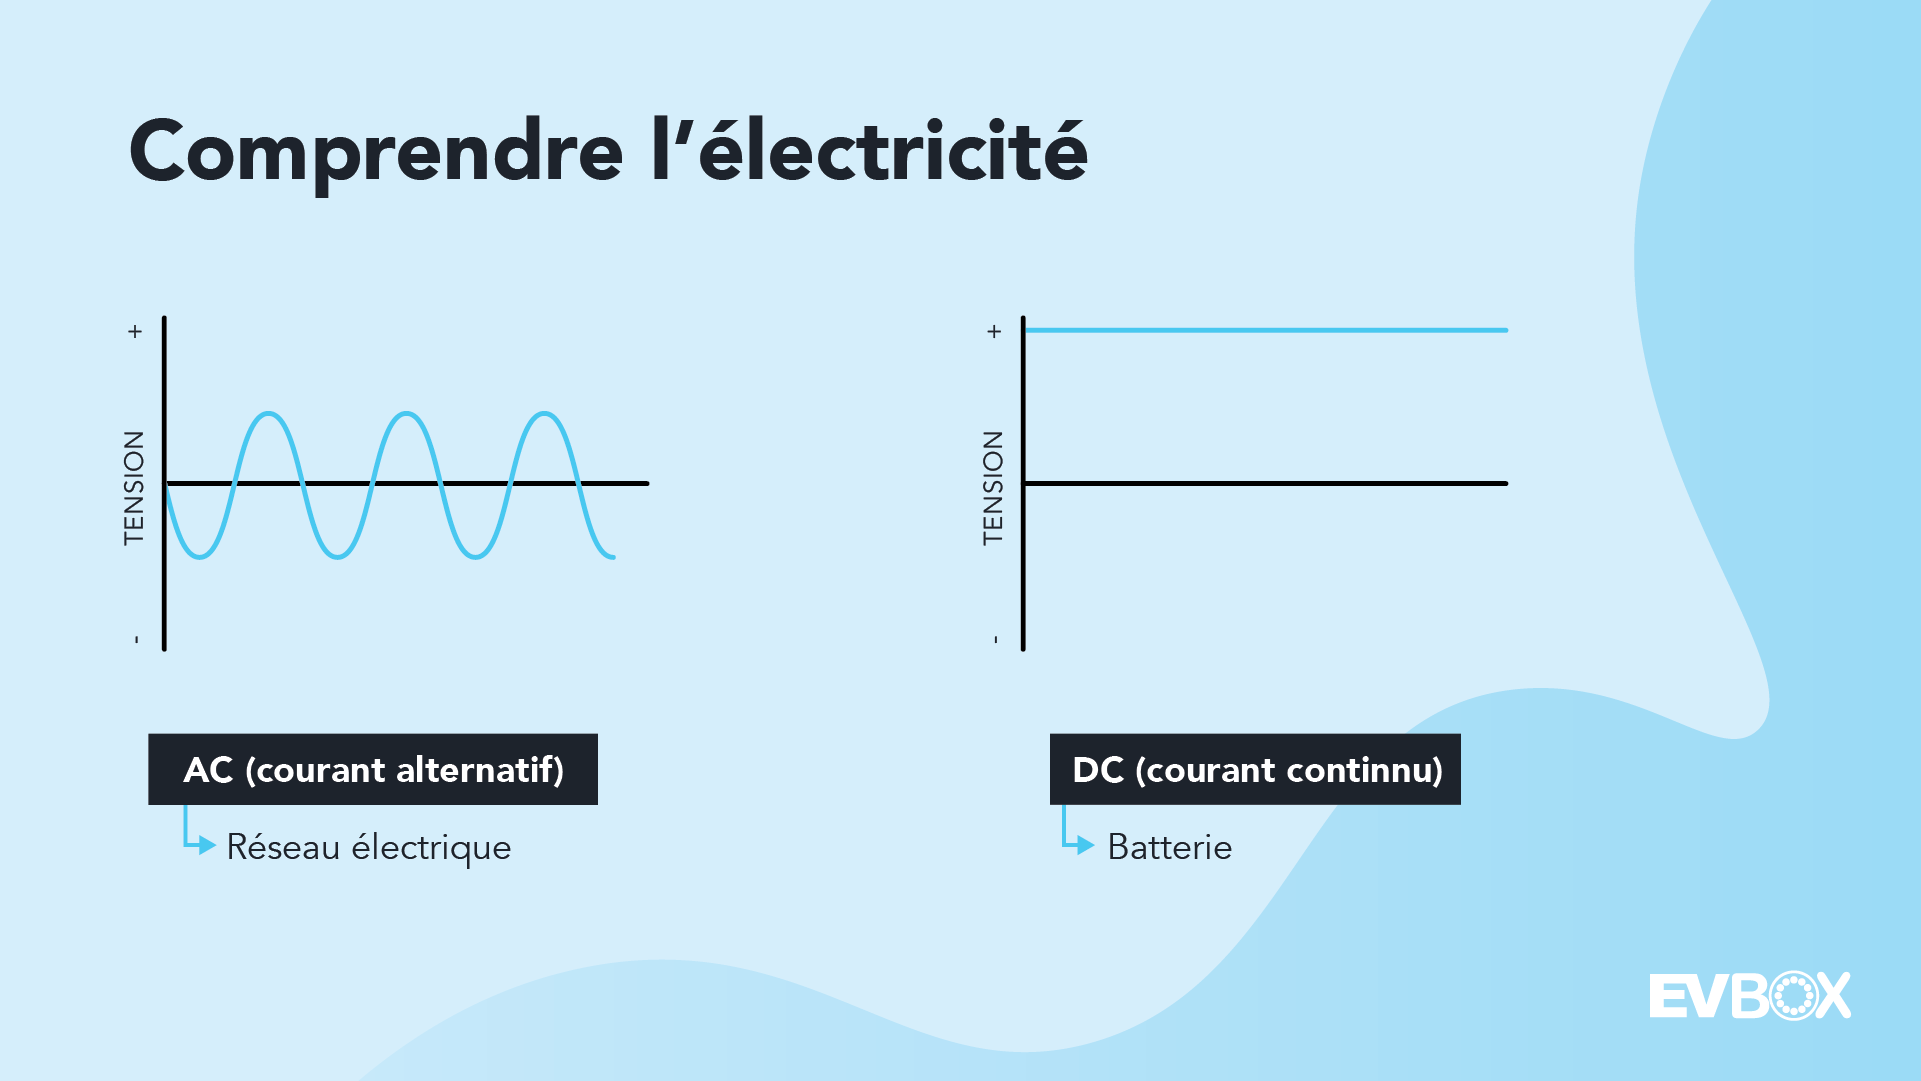 Explication du flux d'électricité durant la charge AC et DC